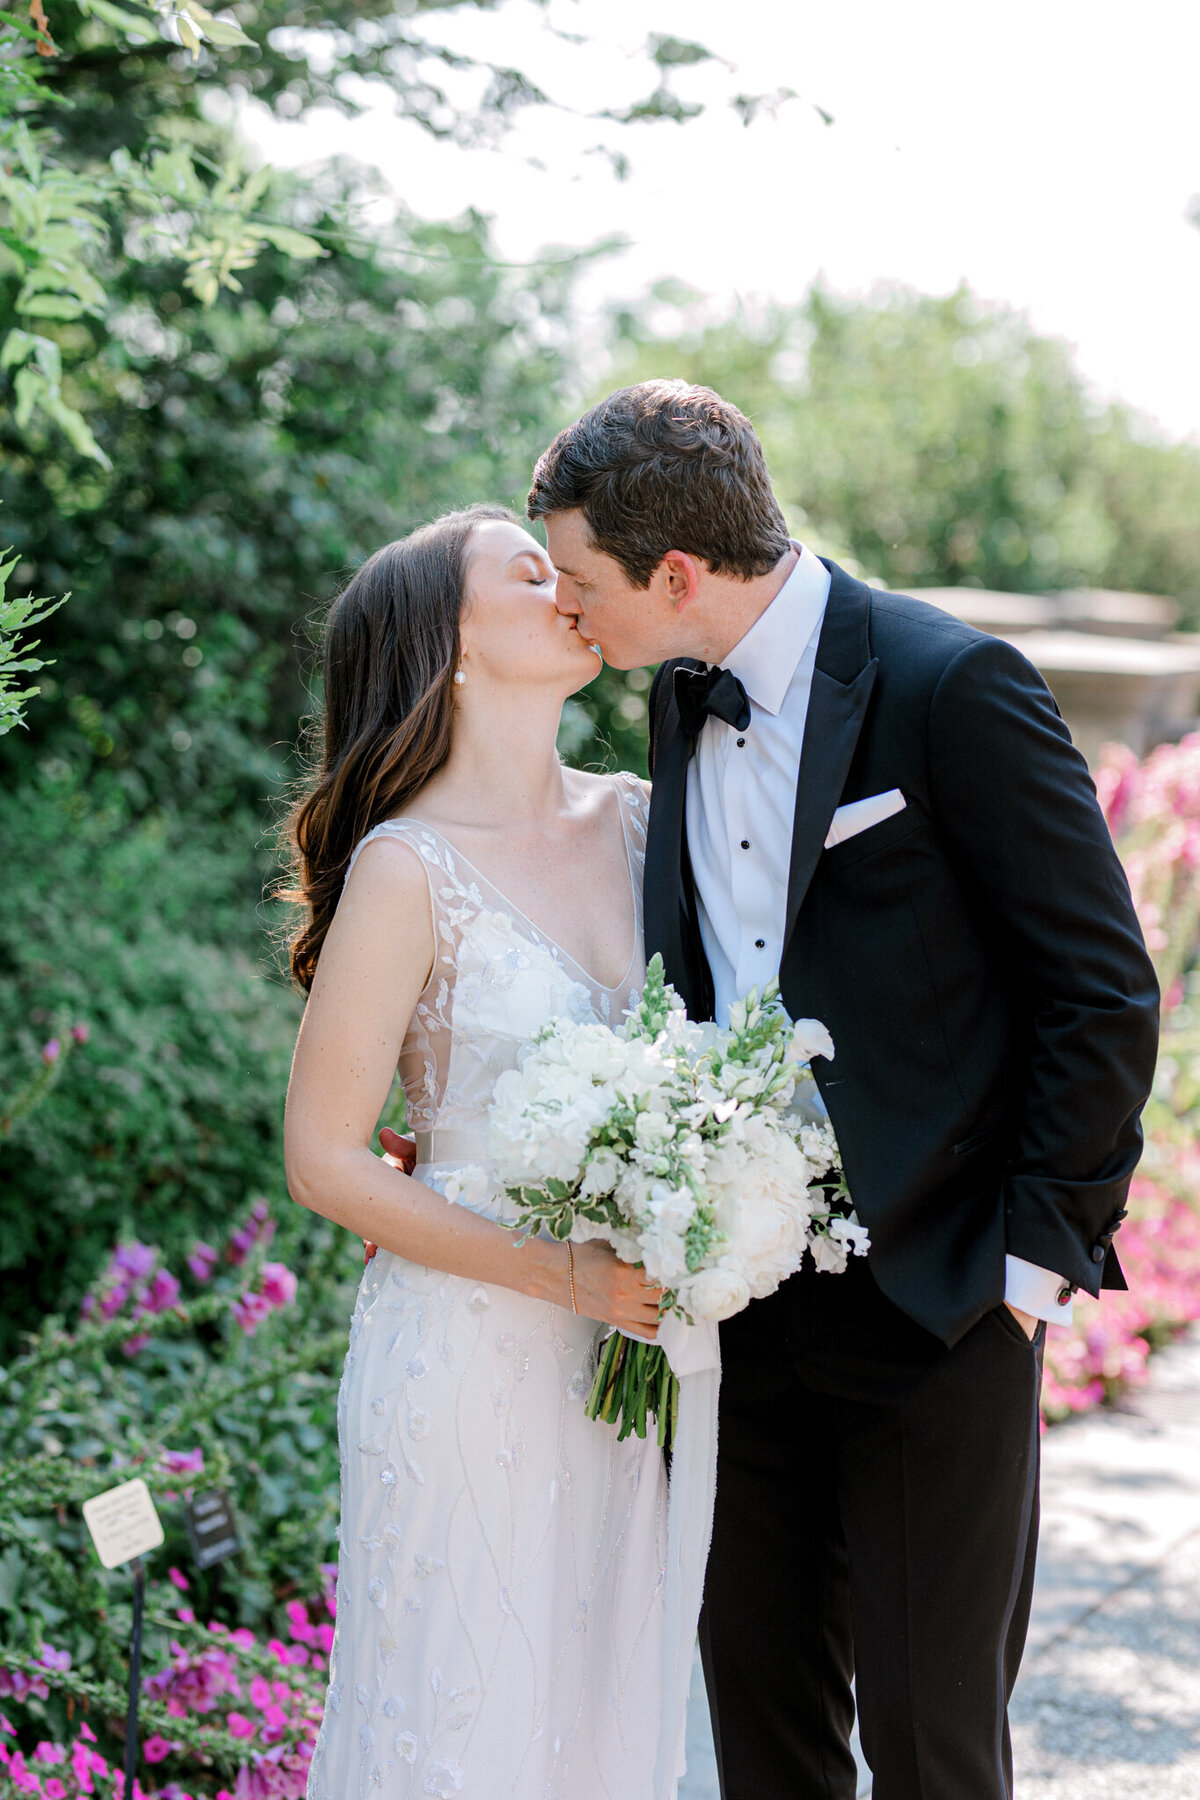 Gena & Matt's Wedding at the Dallas Arboretum | Dallas Wedding Photographer | Sami Kathryn Photography-2